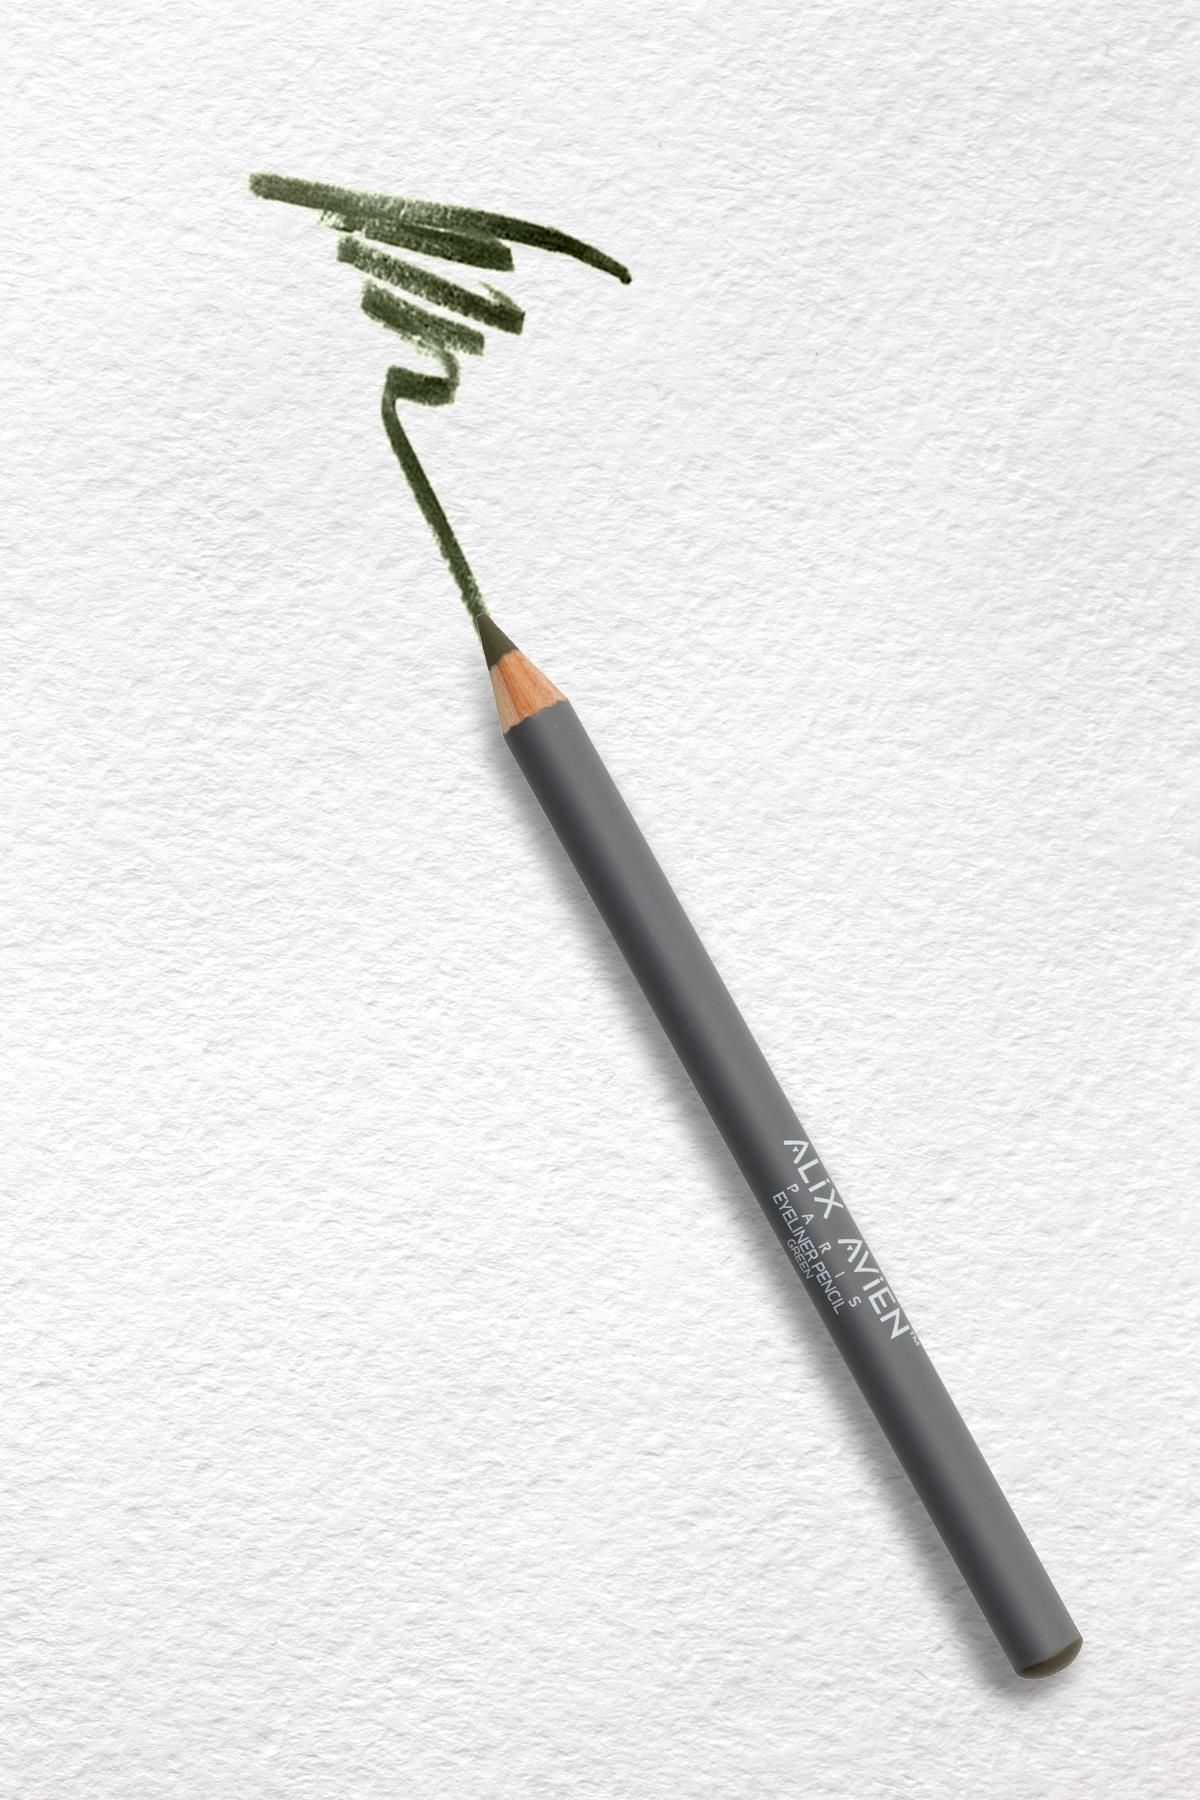 Alix Avien Yeşil Göz Kalemi - Yoğun Renk - Kremsi Yapı - 7 Saate Kadar Kalıcı Etki - Eyeliner Pencil Green